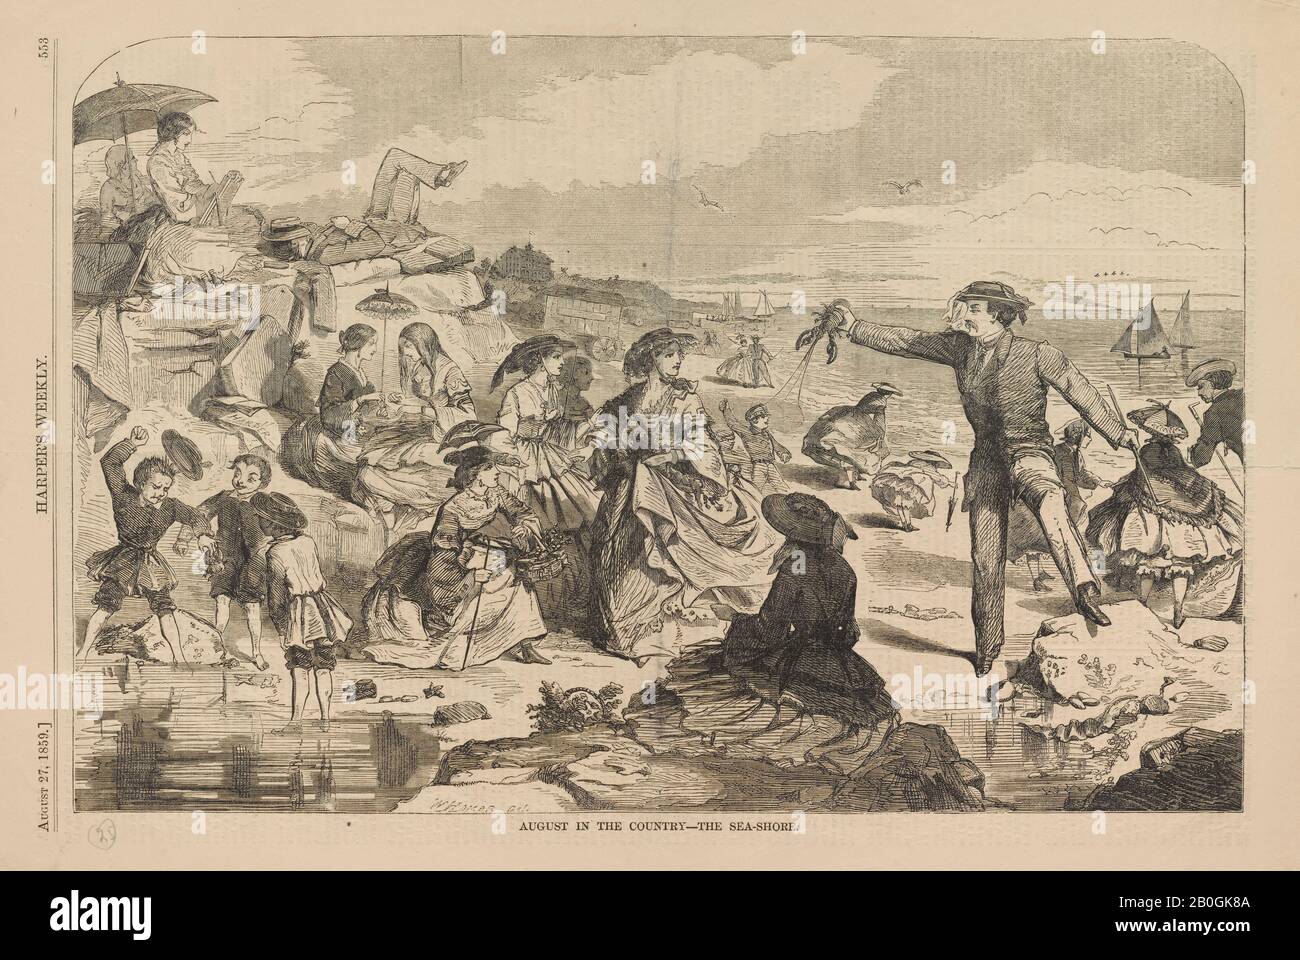 Dopo Winslow Homer, americano, 1836–1910, agosto nel Paese: La Sea-Shore, Da Harper's Weekly, vol. 3, 27 ago. 1859, incisione su carta da giornale, immagine: 9 1/8 x 13 13/16 in. (23,2 x 35,1 cm Foto Stock